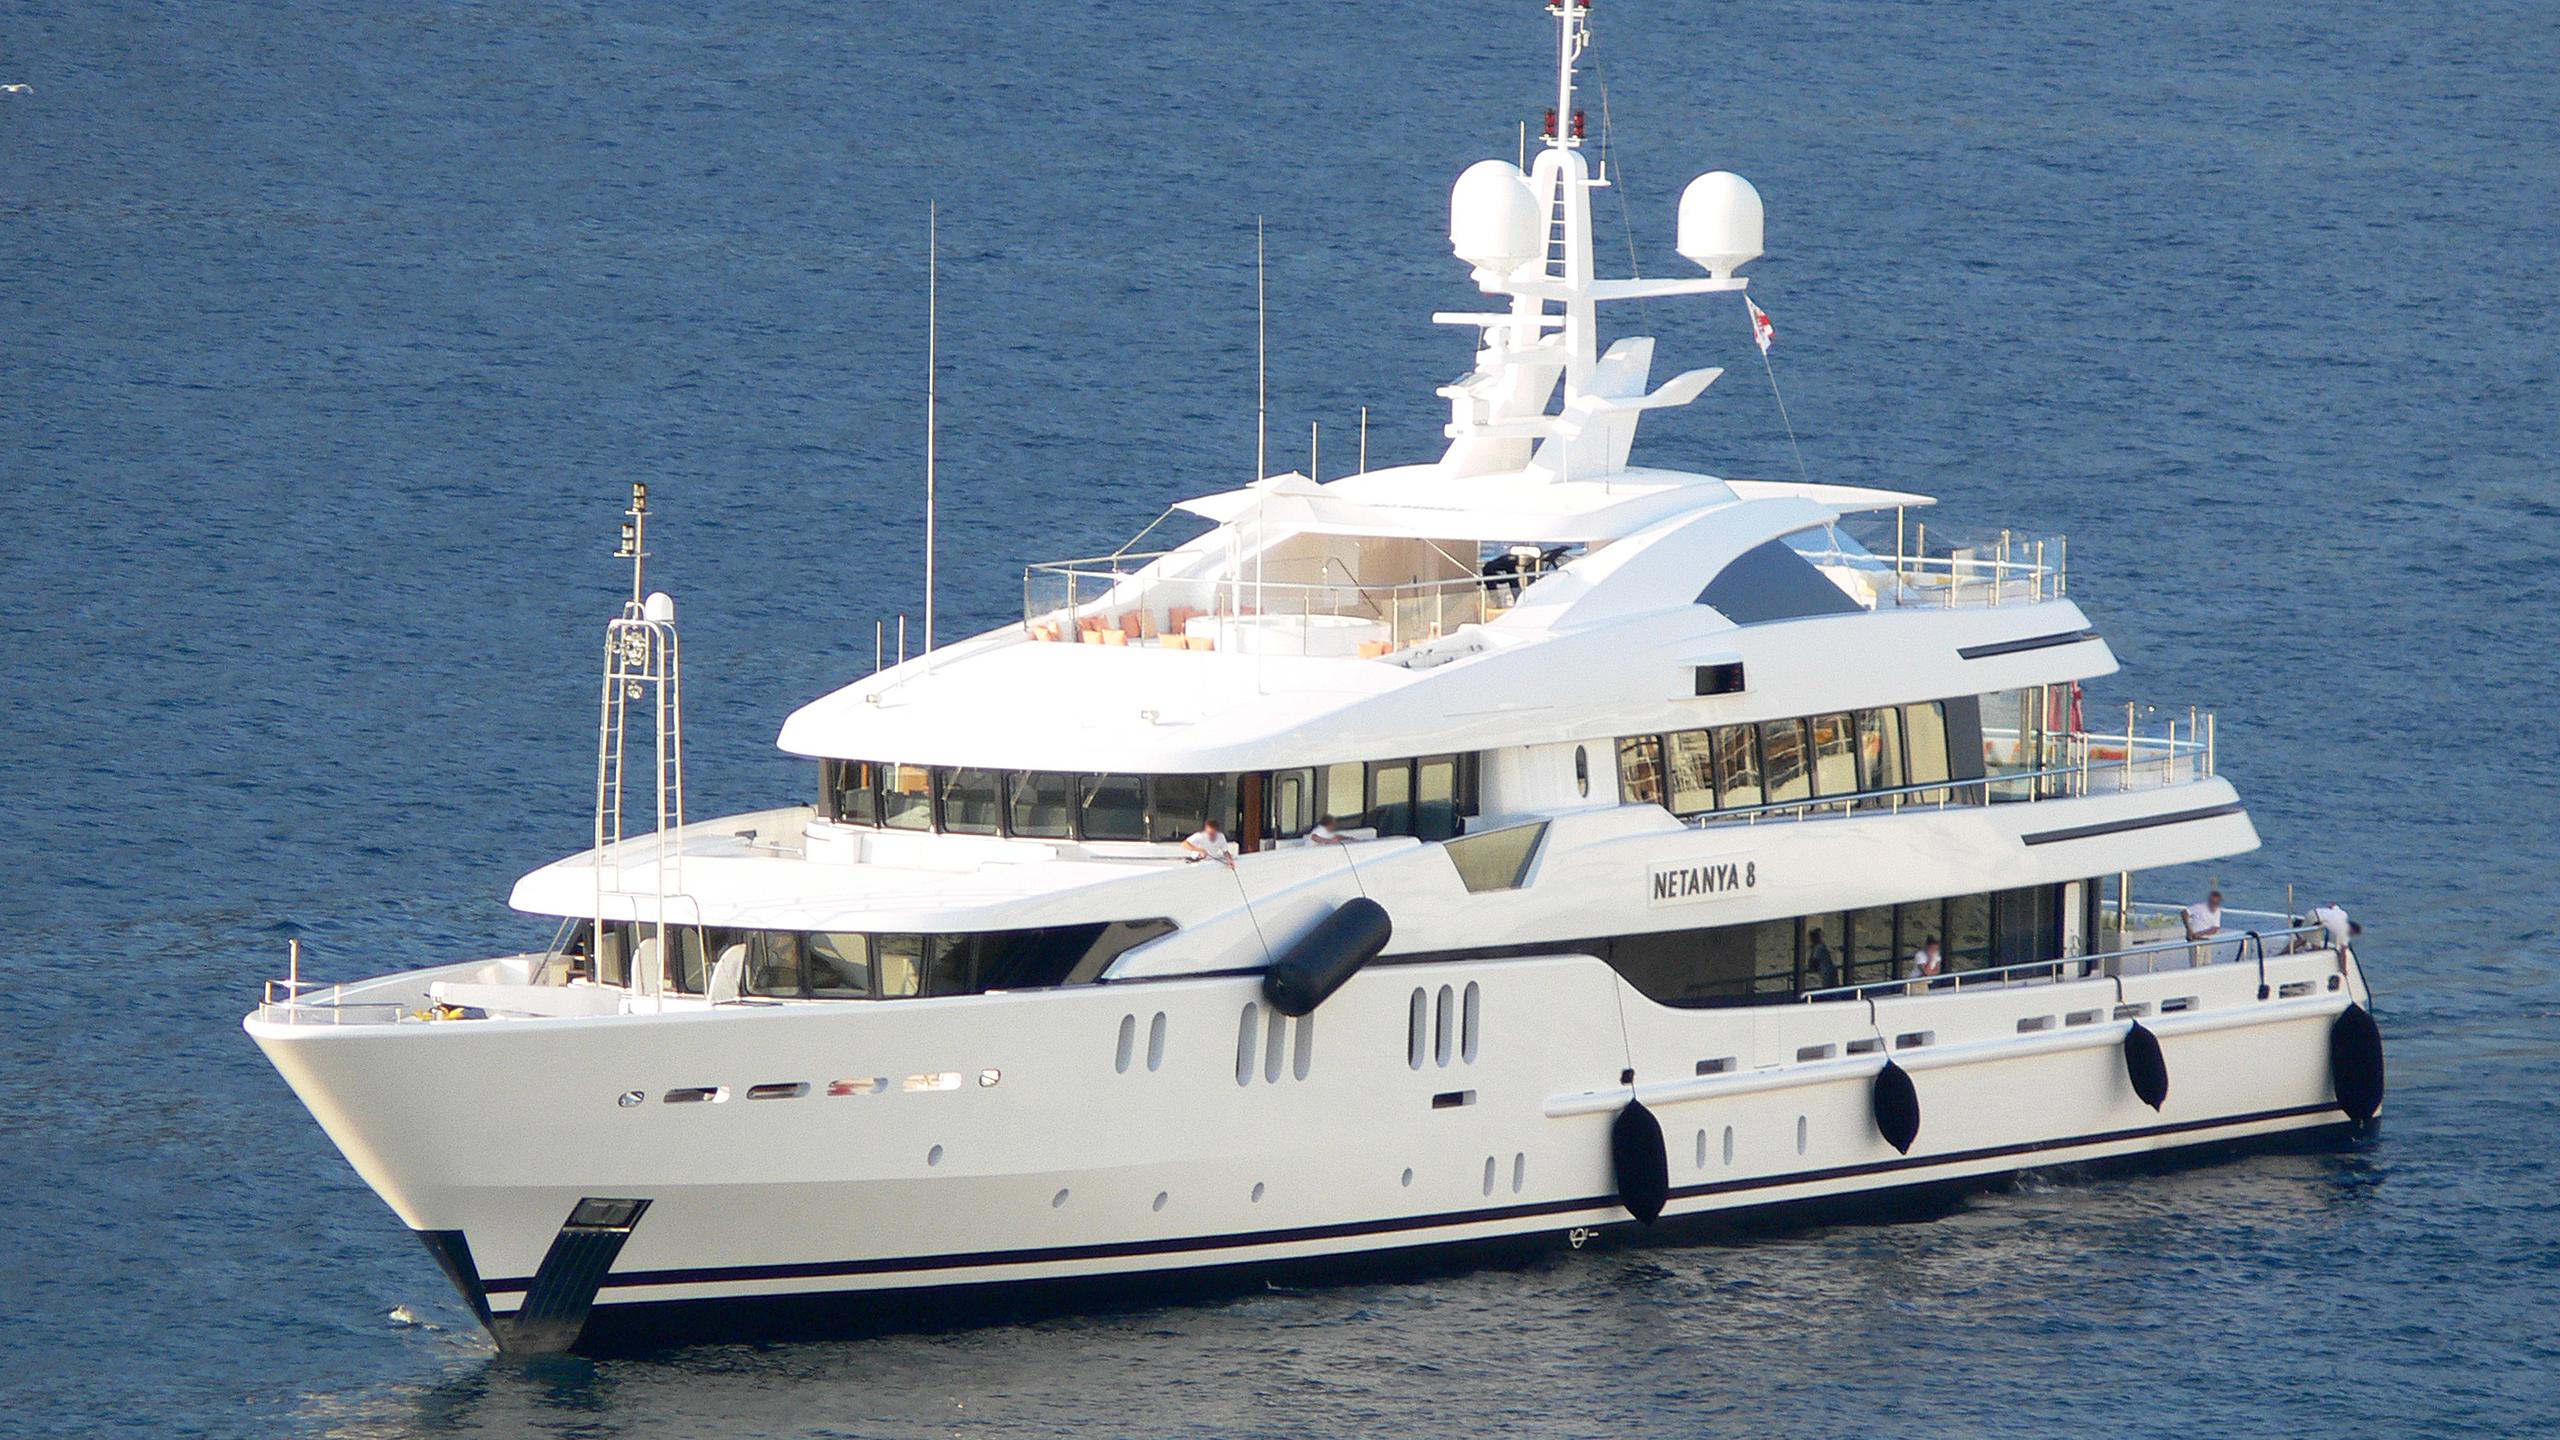 netanya 8 yacht charter price